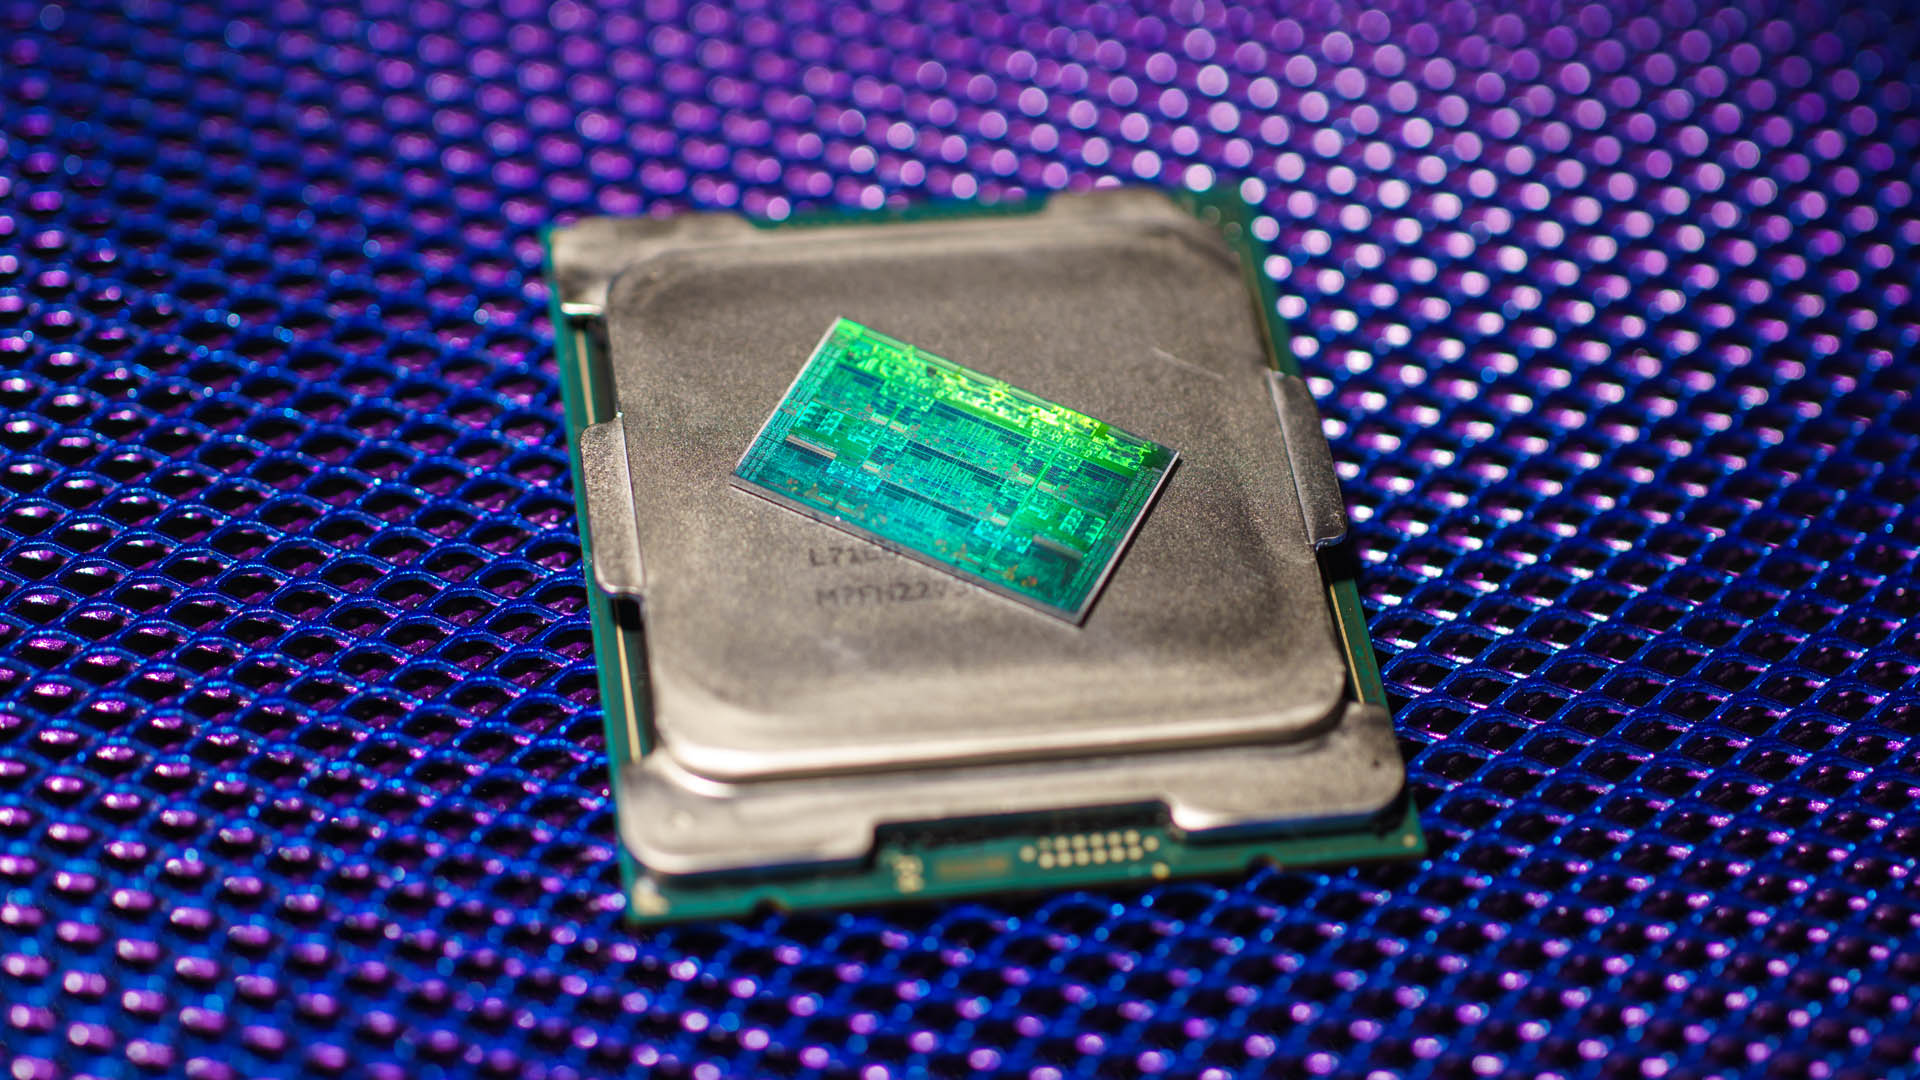 Intel chipi